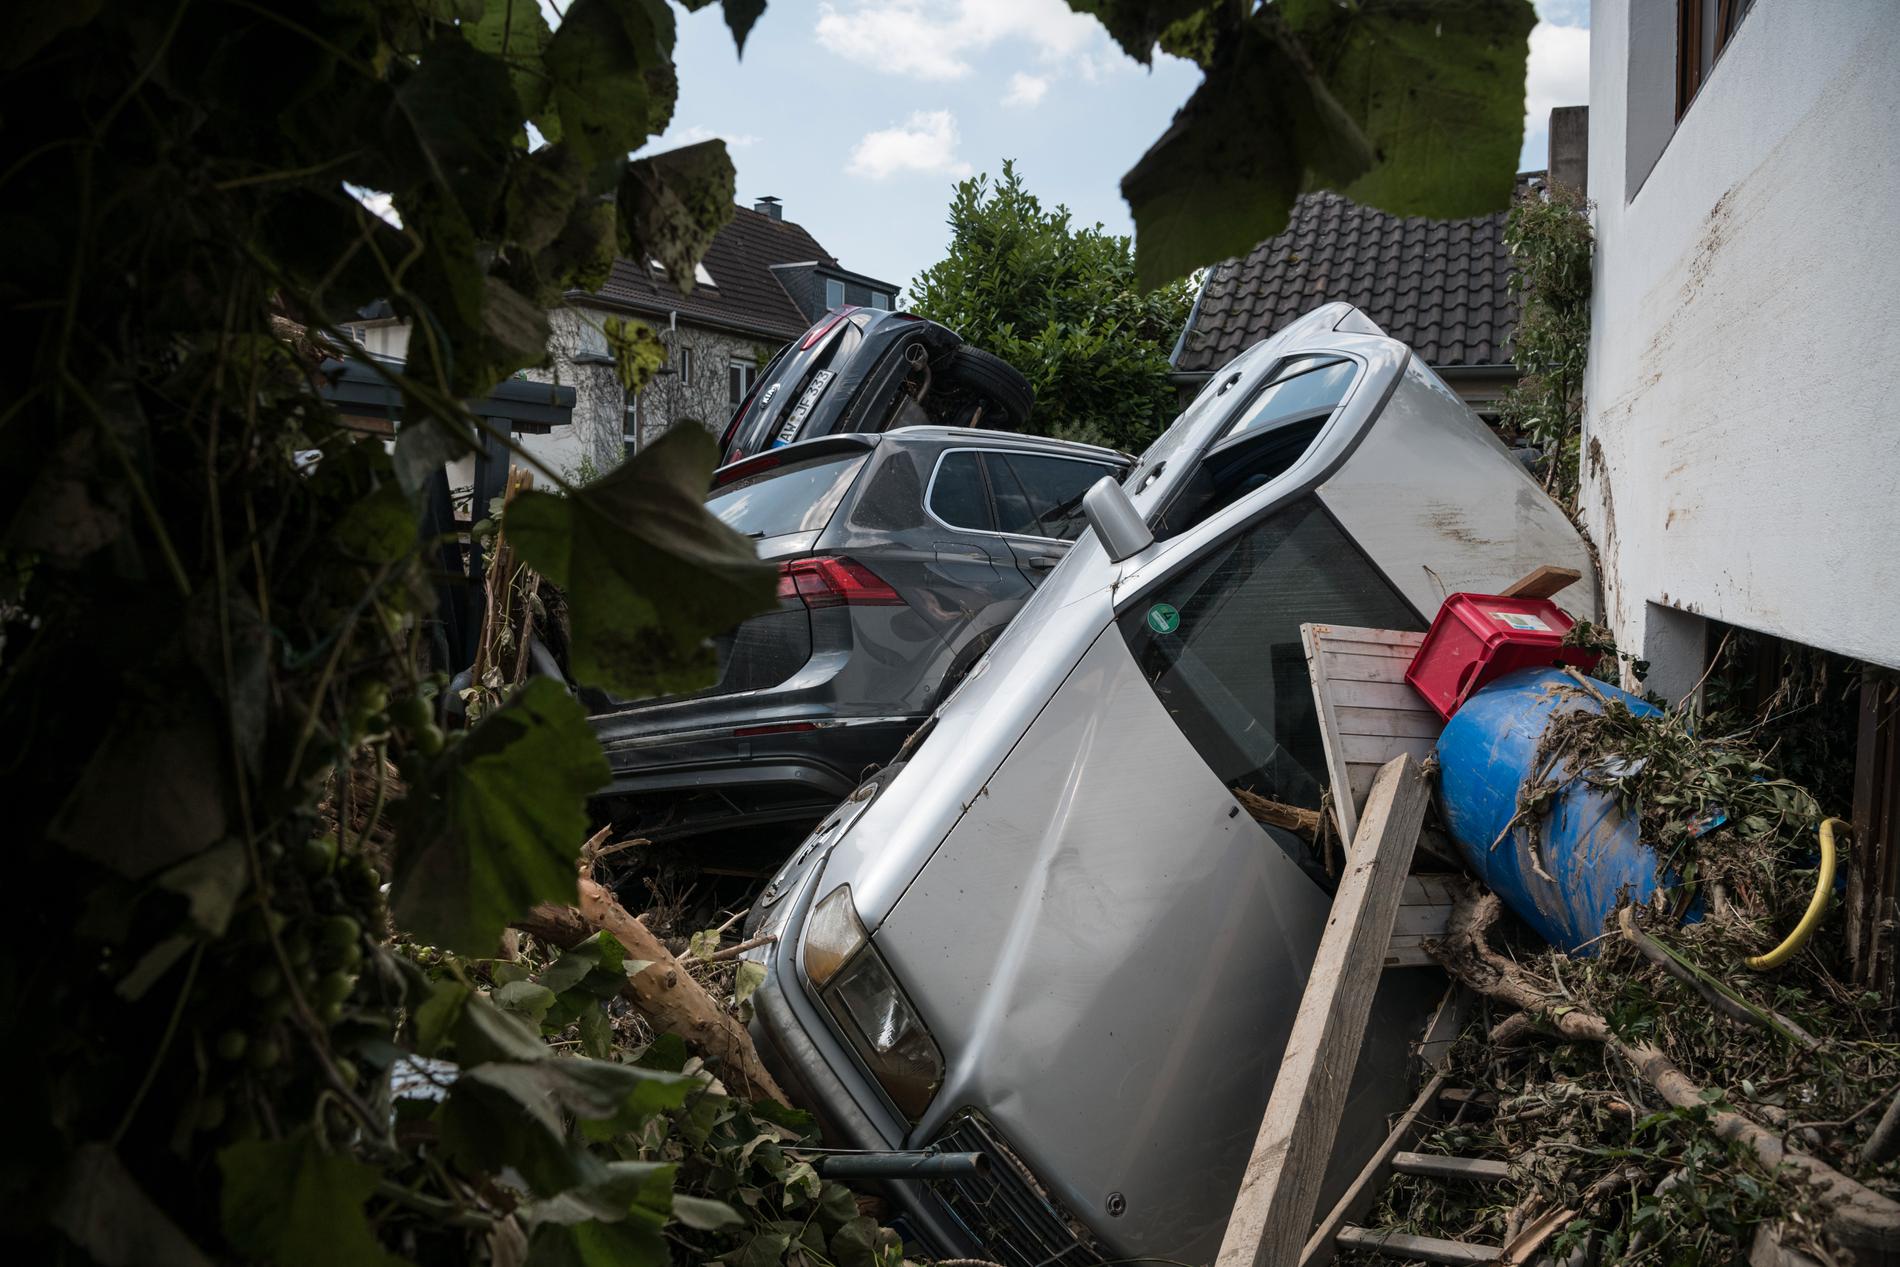 Bilar ligger huller om buller på en liten innergård i tyska Ahrweiler. 